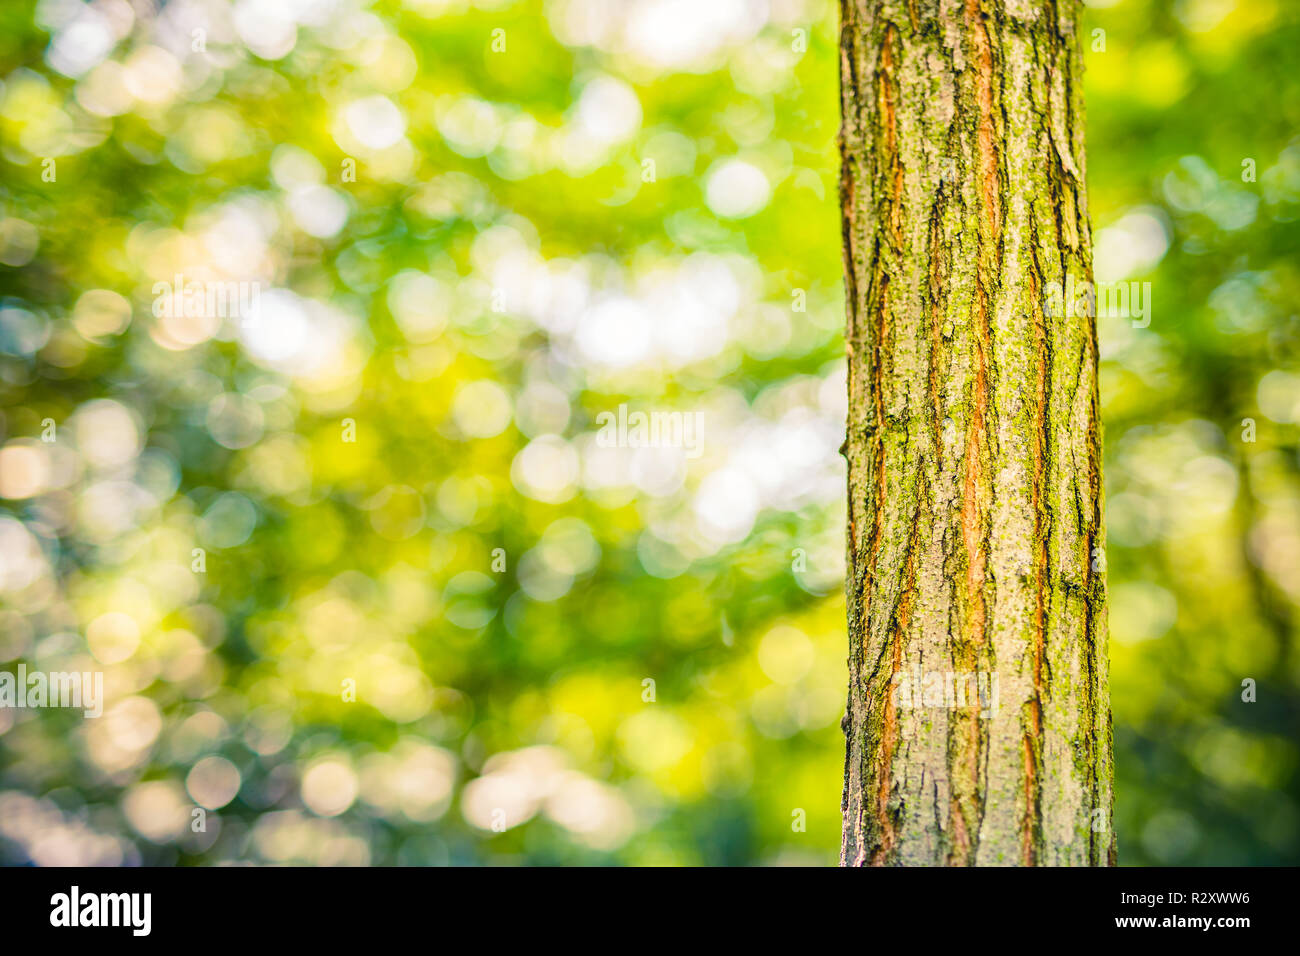 Fresco verde naturale legno texture, struttura albero bokeh verde sulla natura astratta sfocatura sfondo verde bokeh. Modello naturalistico artistico e astratto Foto Stock